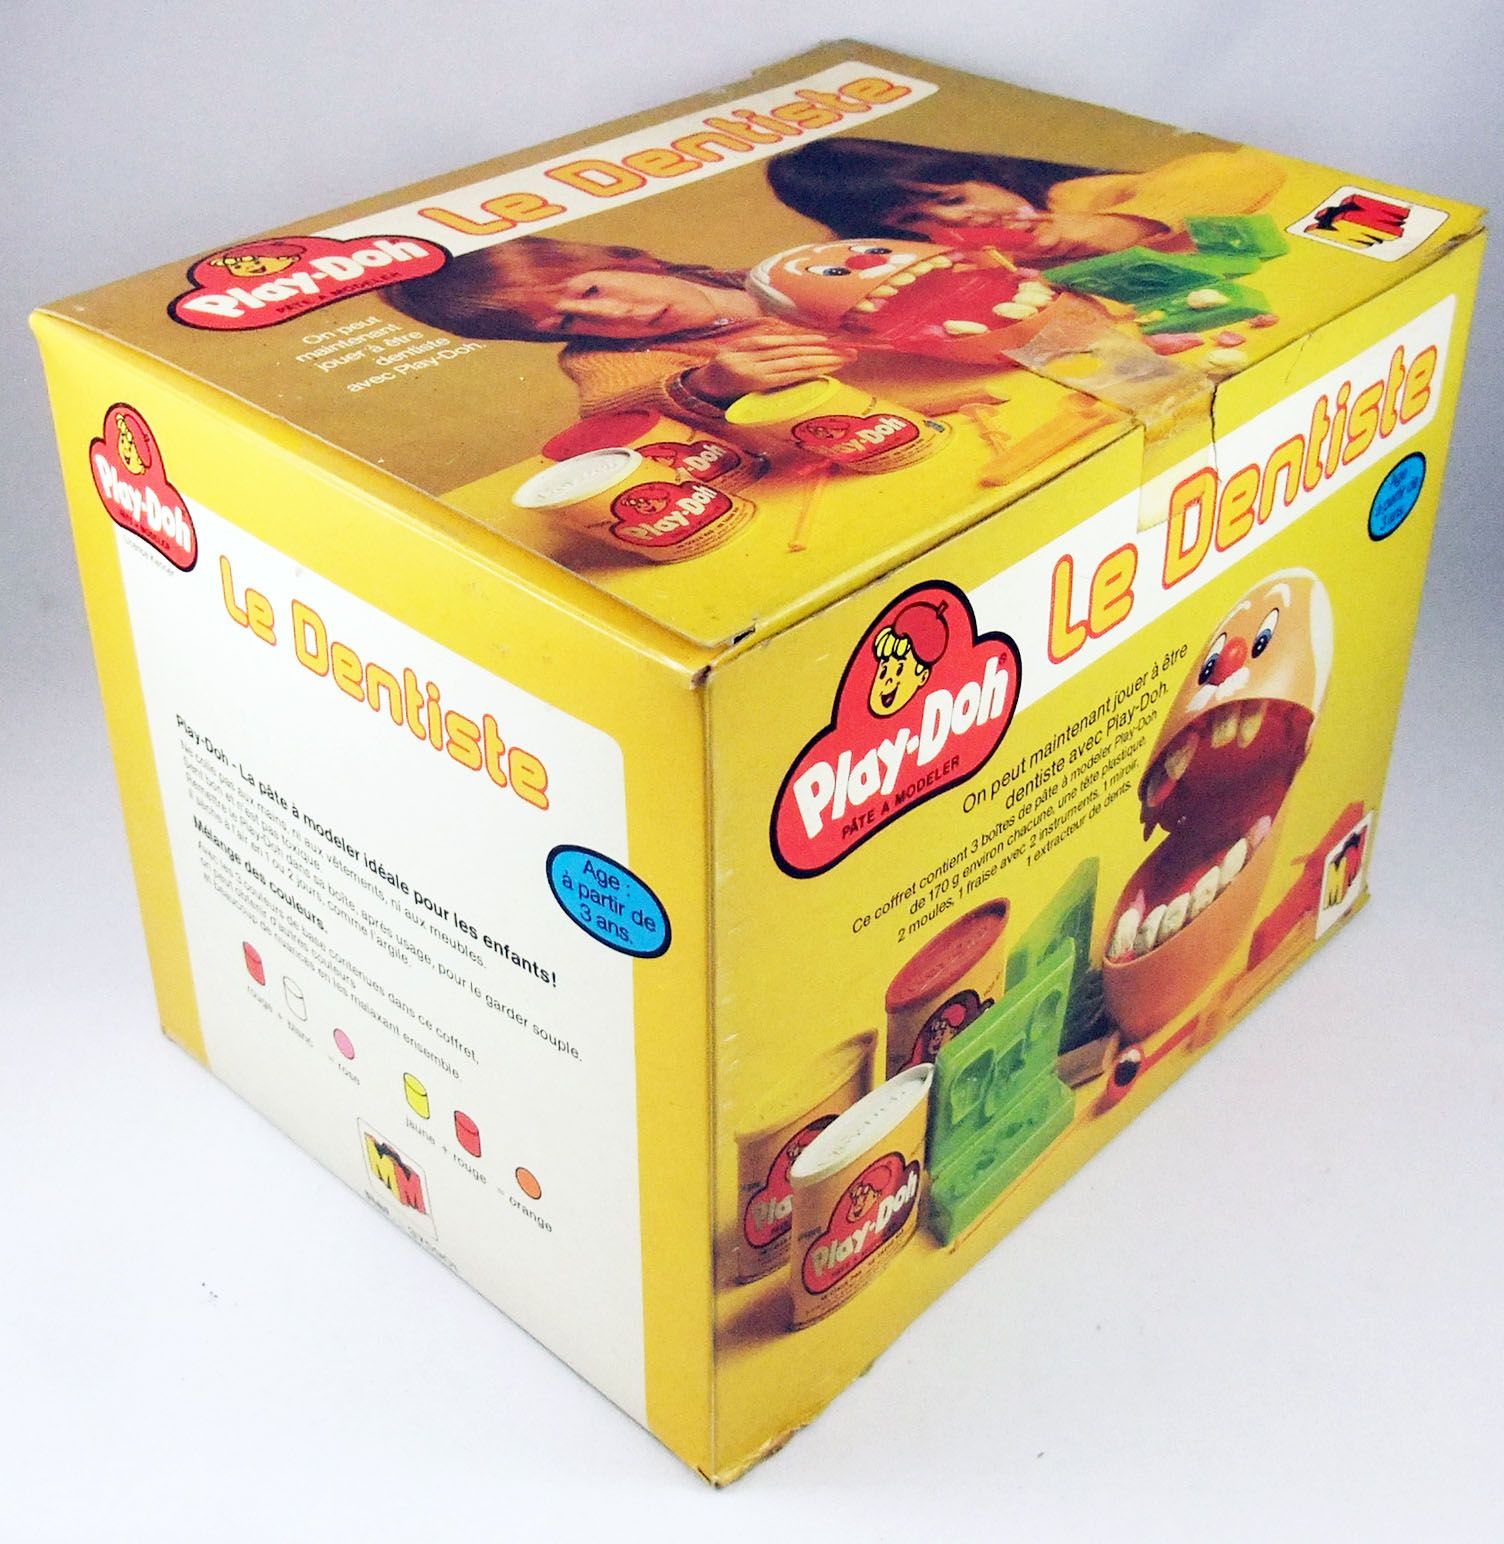 Play-Doh - Le Coiffeur - Coffret de pâte à modeler - Jamarex SA 1979